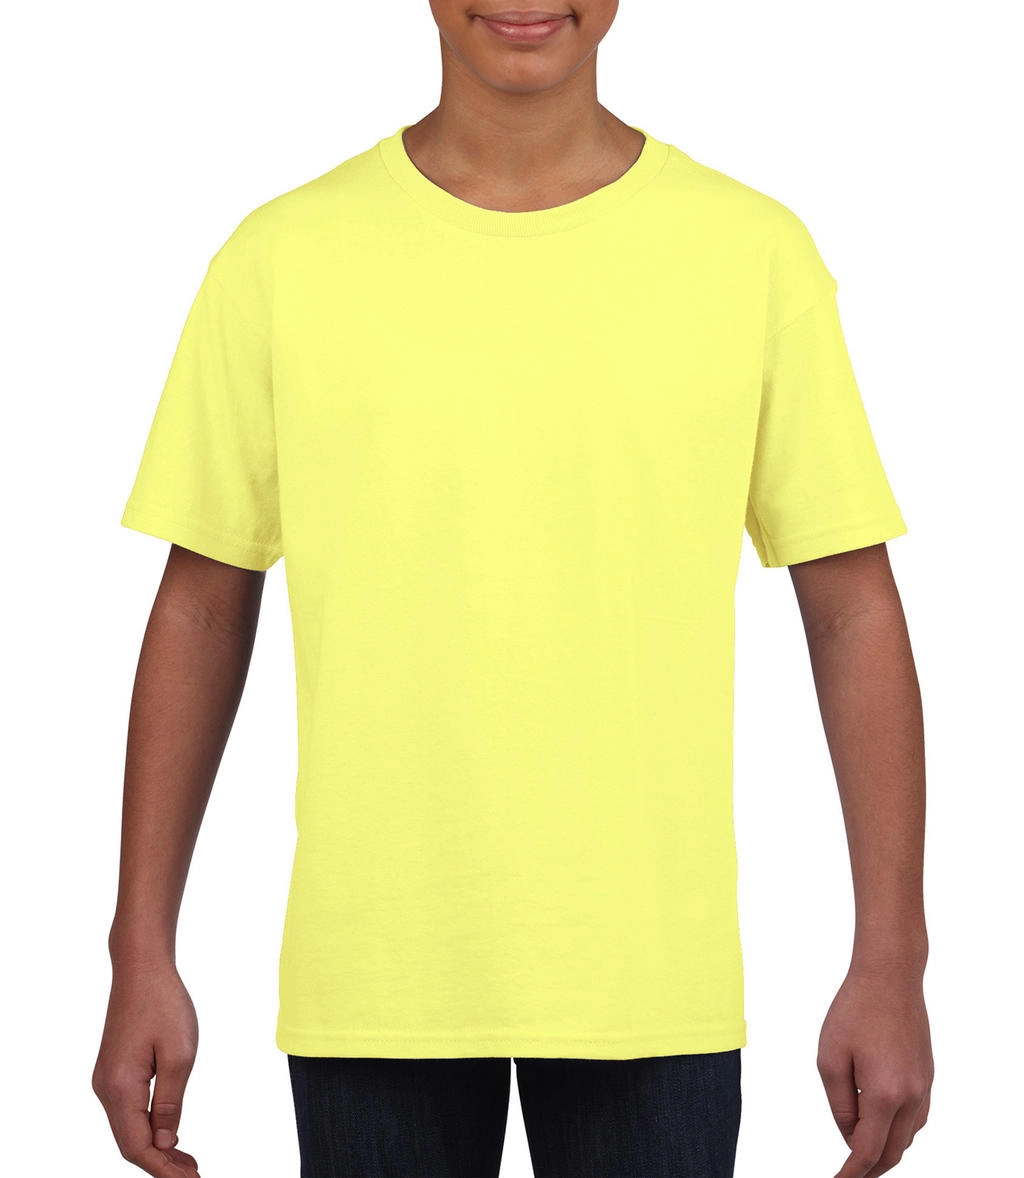 Softstyle® Youth T-Shirt zum Besticken und Bedrucken in der Farbe Cornsilk mit Ihren Logo, Schriftzug oder Motiv.